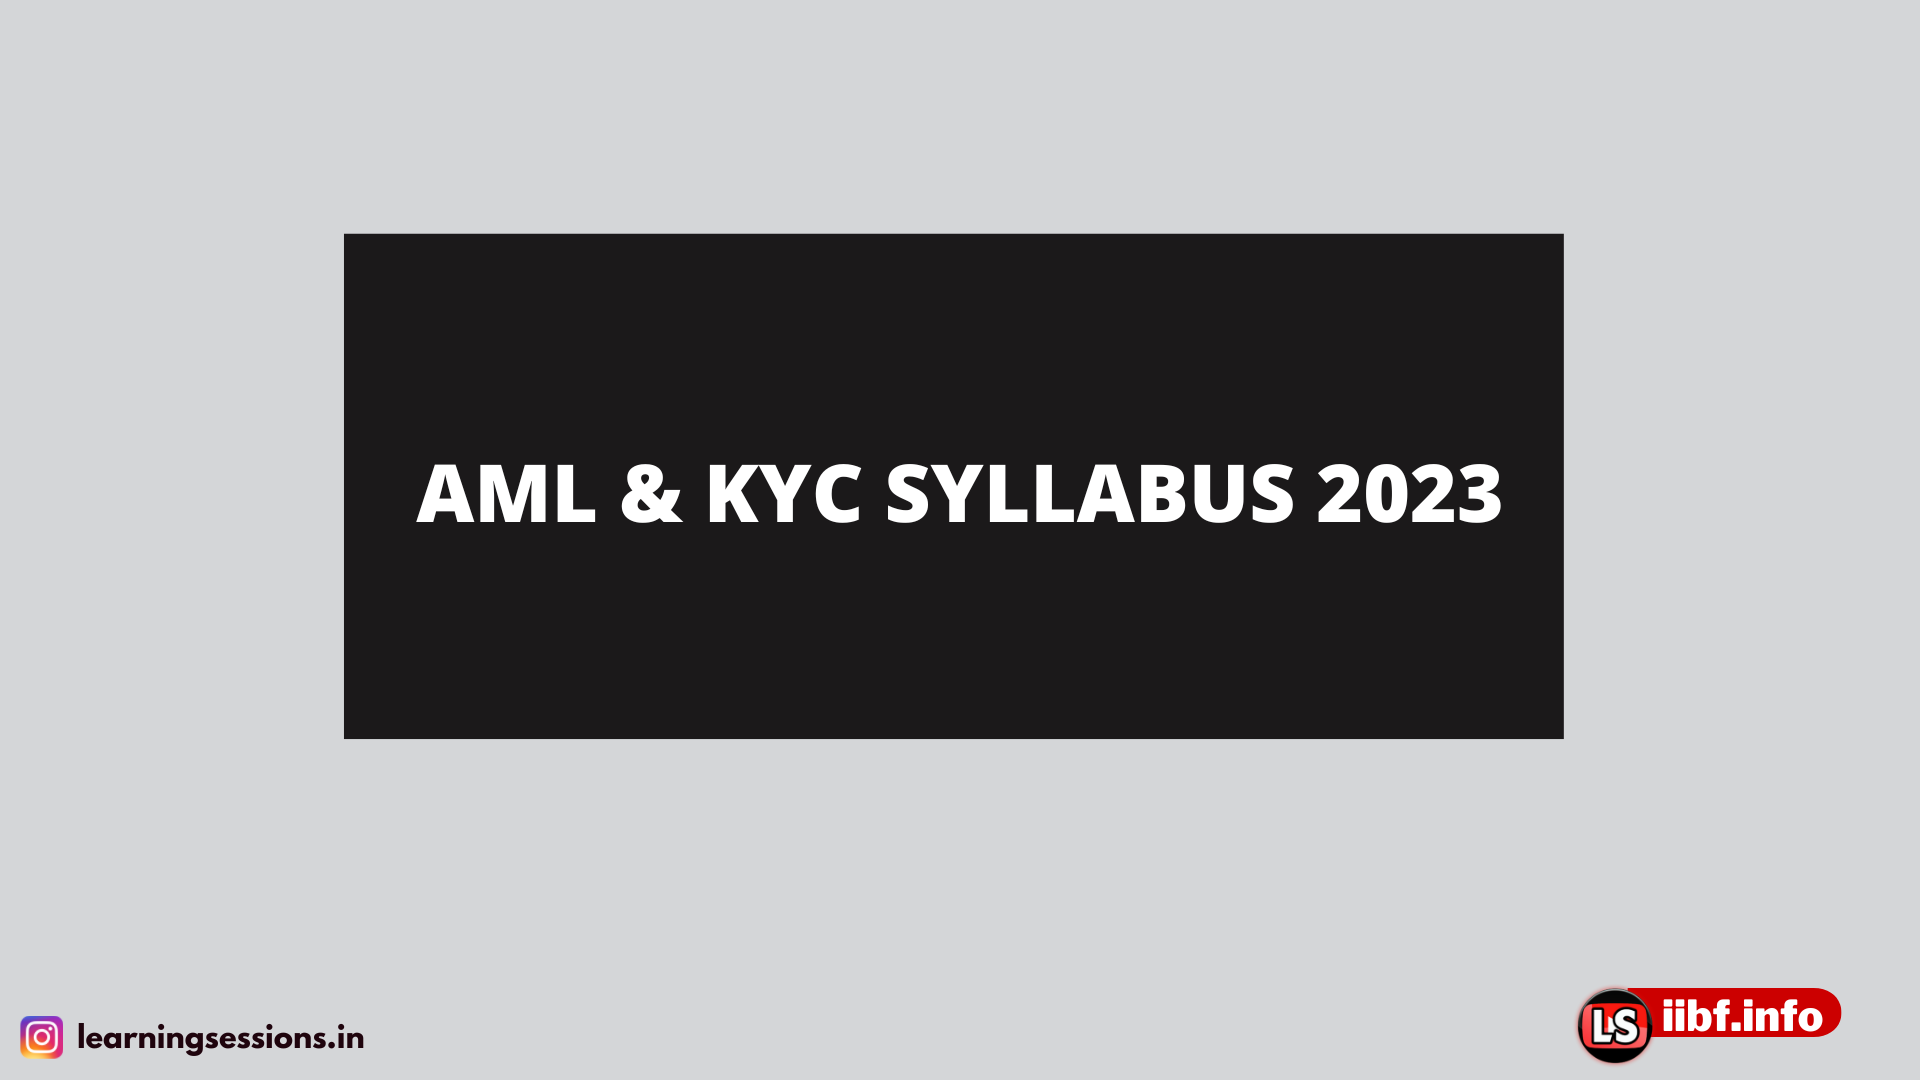 AML & KYC SYLLABUS 2021-2022